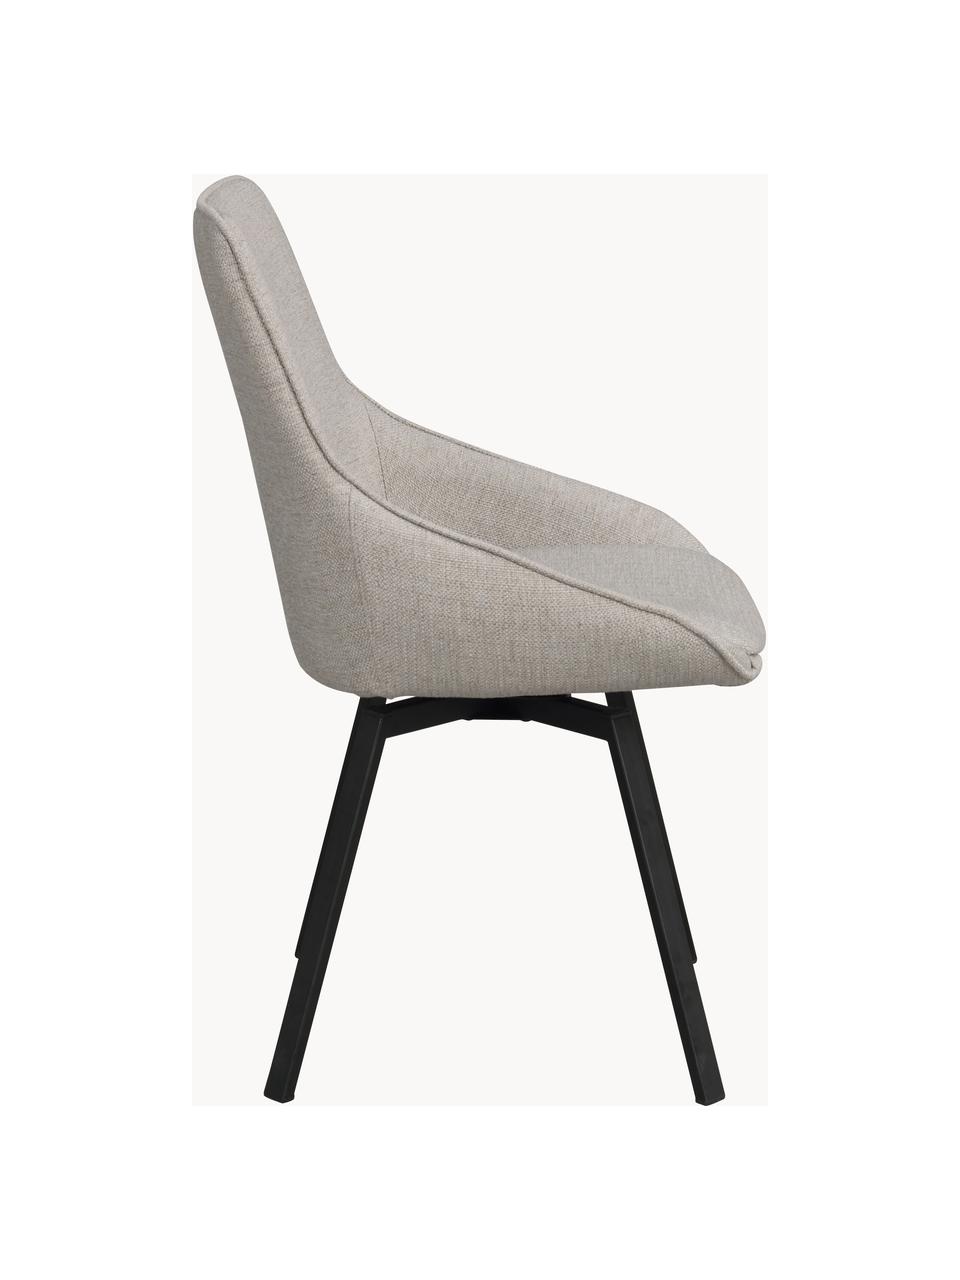 Otočná čalouněná židle Alison, Greige, černá, Š 51 cm, H 57 cm